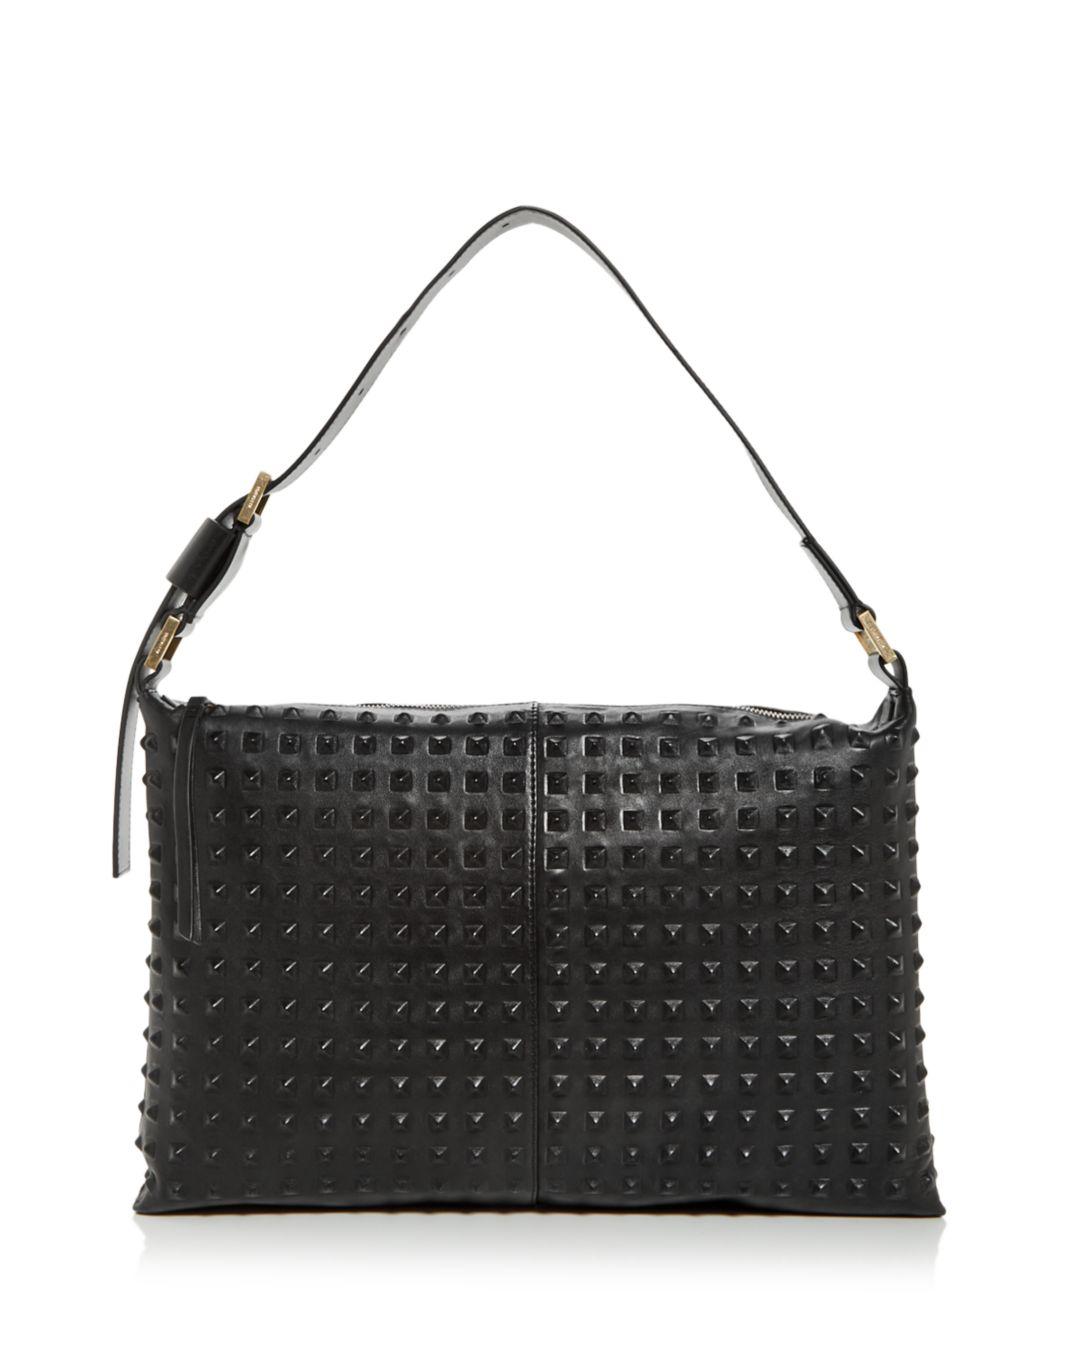 AllSaints Edbury Studded Leather Shoulder Bag in Black | Lyst